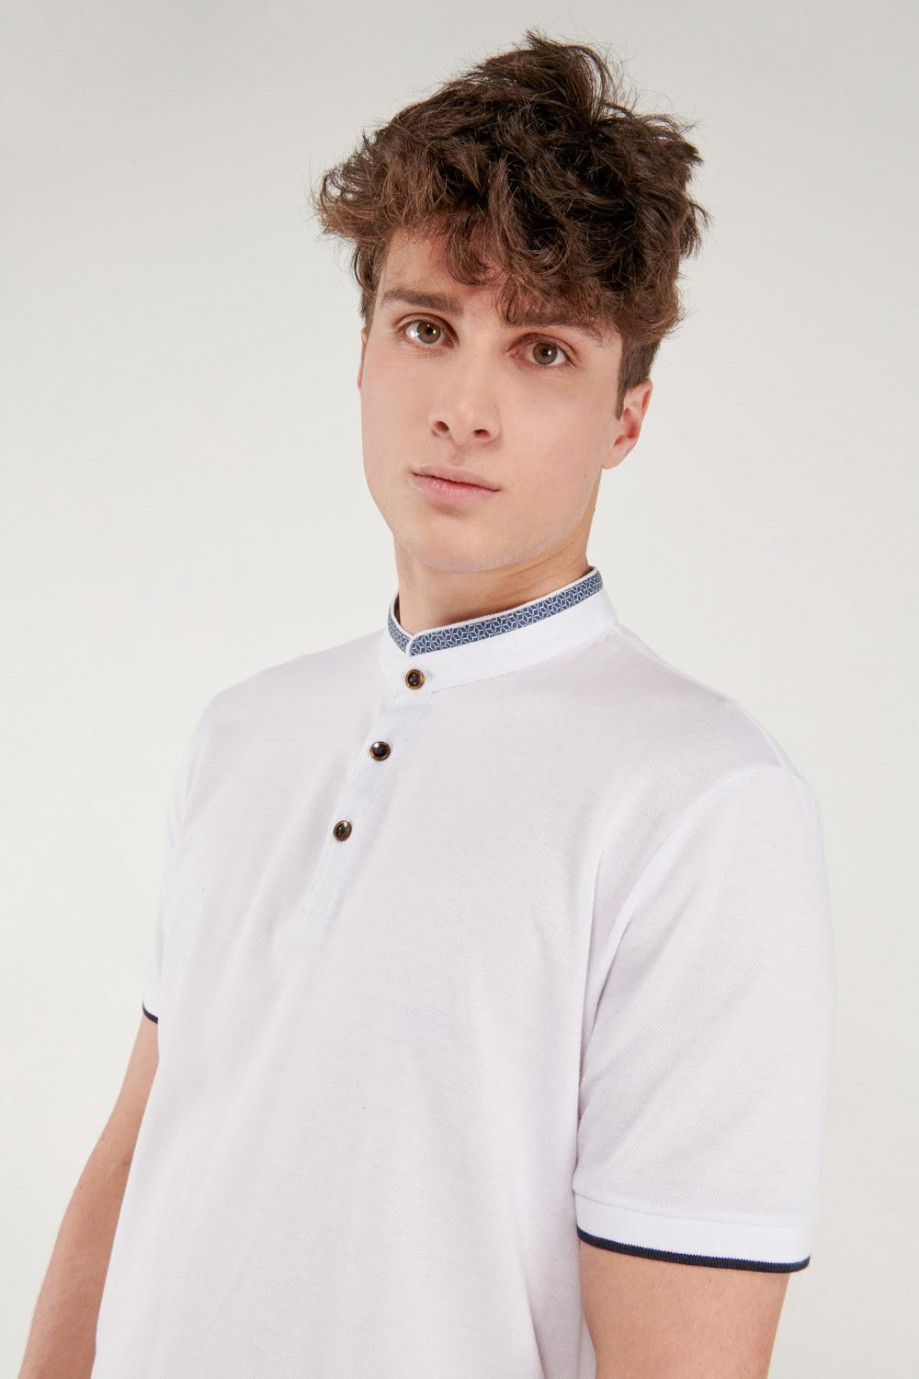 Camiseta Polo unicolor con cuello neru y puños tejidos.